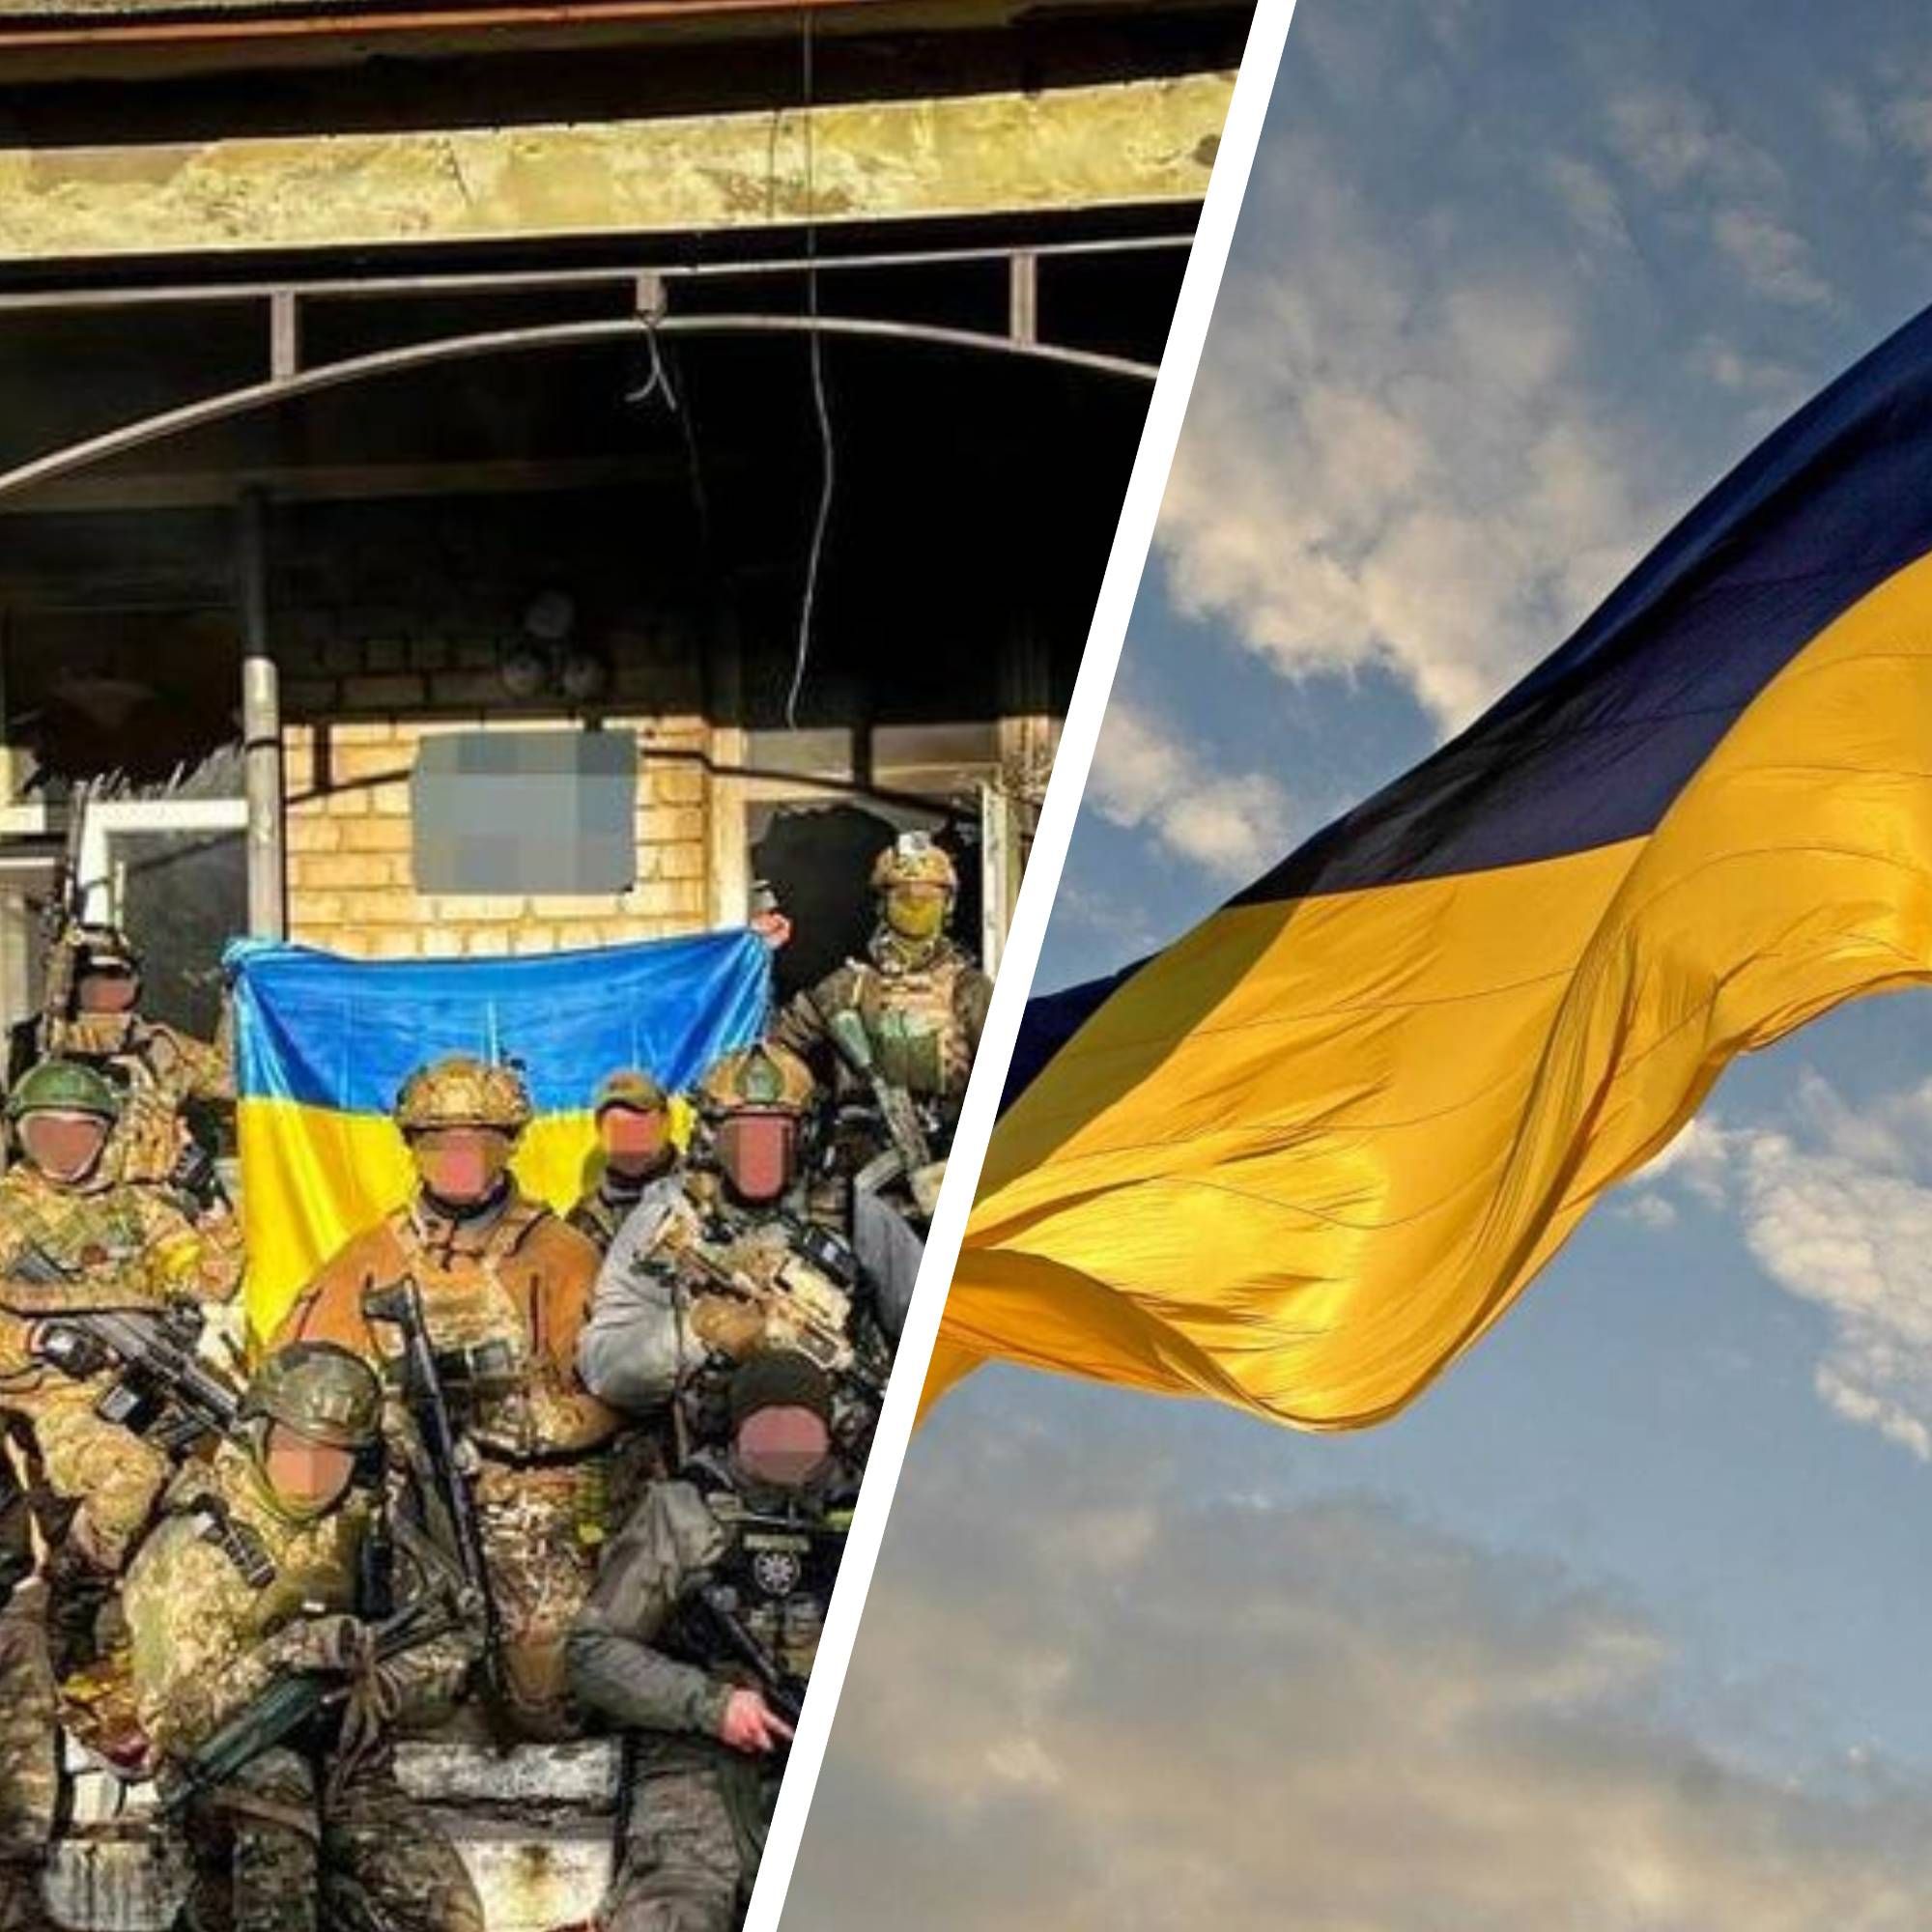 Нововоскресенське - у селі майорить прапор України